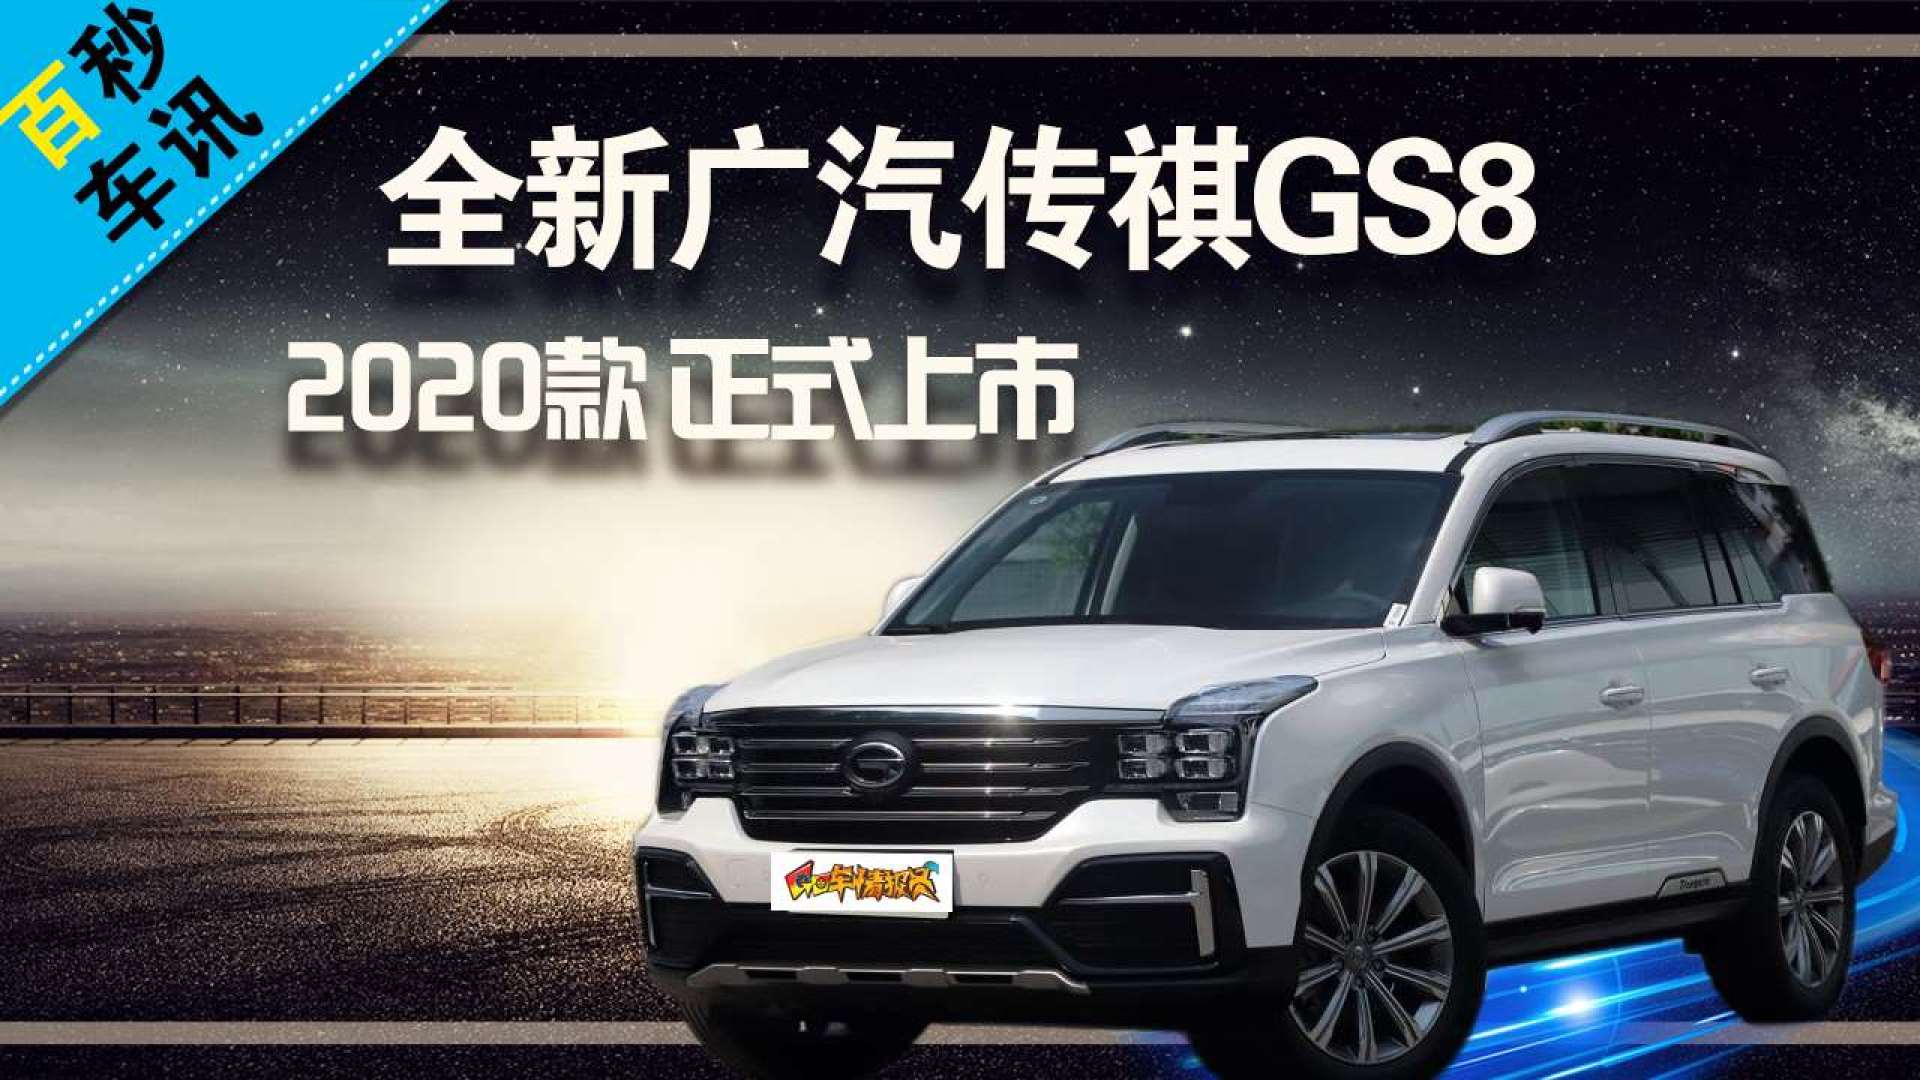 【百秒车讯】2020款广汽传祺gs8正式上市,售价为16.68